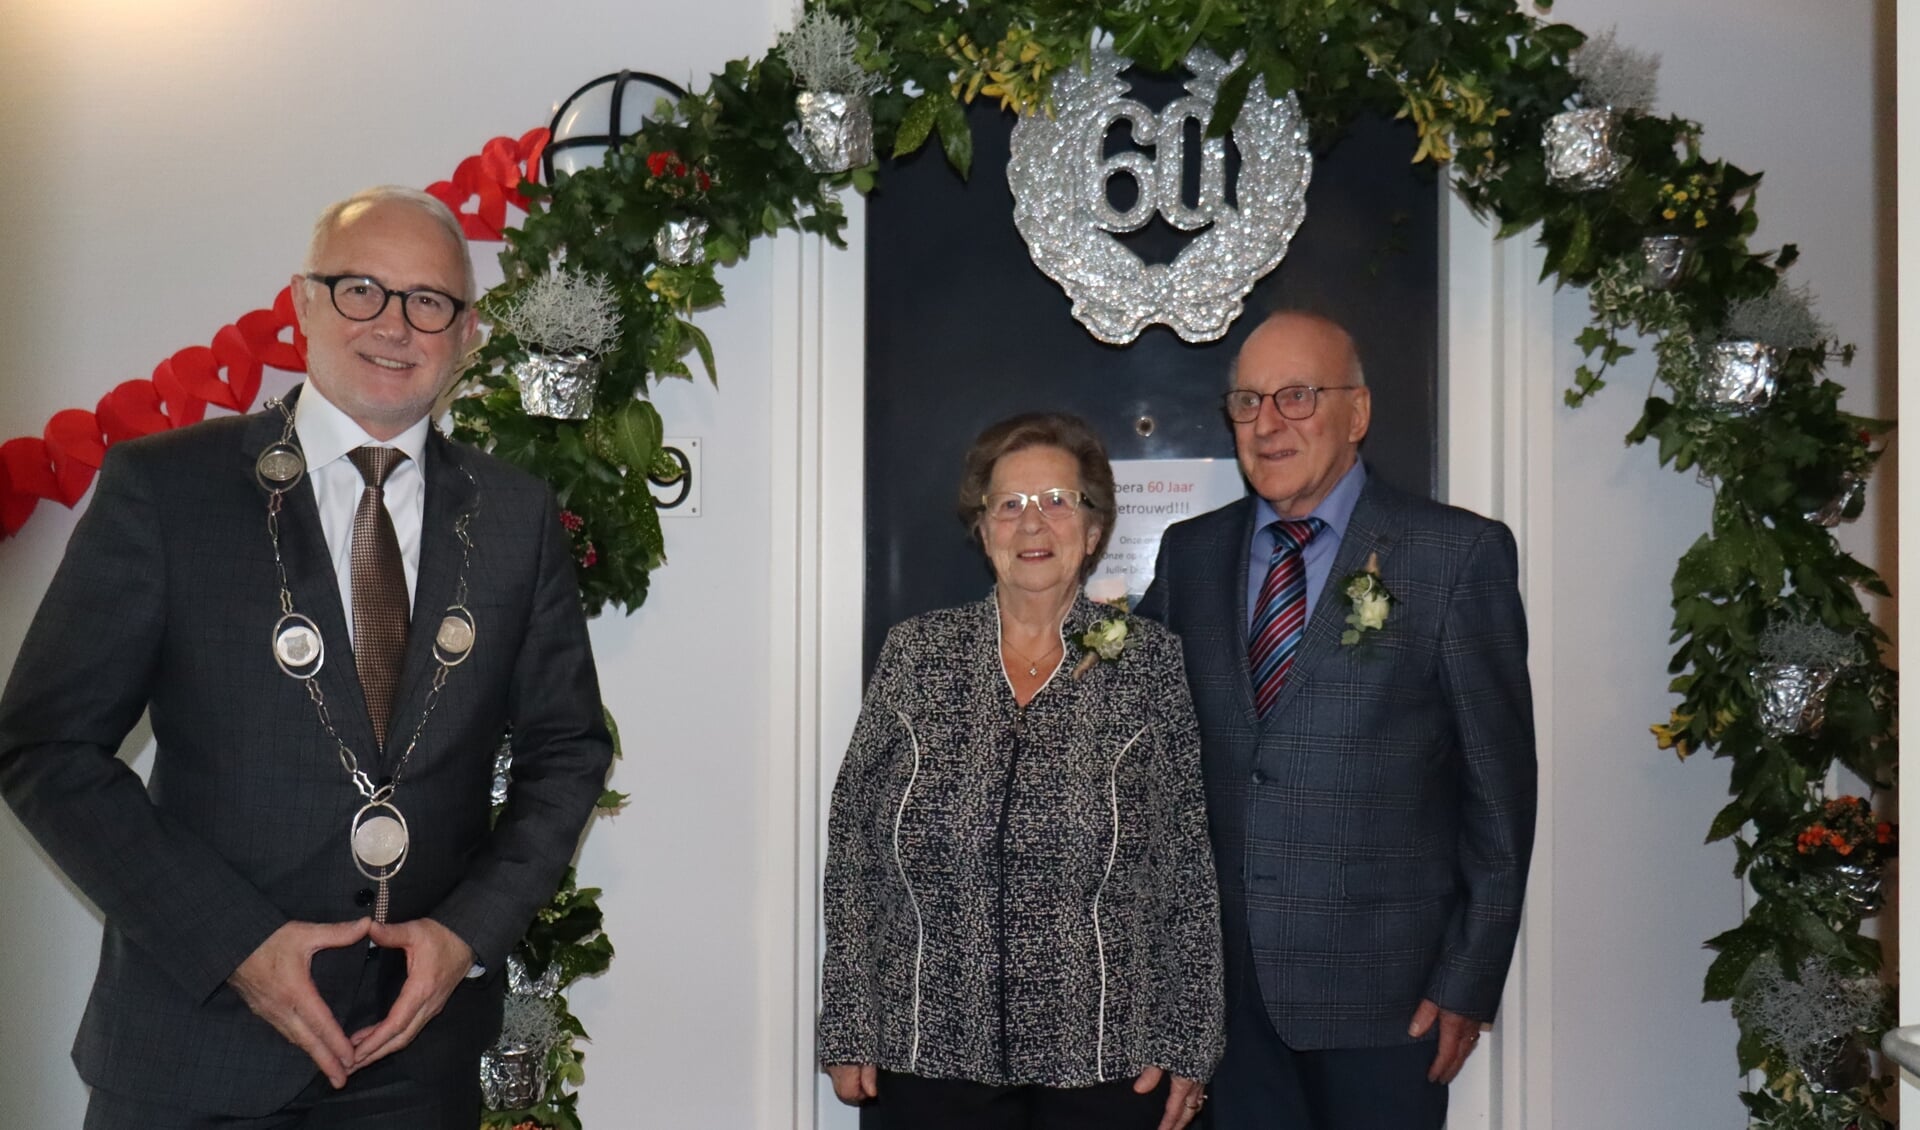 Burgemeester Van den Hengel ging bij het echtpaar Van der Vliet op bezoek. Hij gaf felicitaties voor hun zestig jarig huwelijksjubileum.